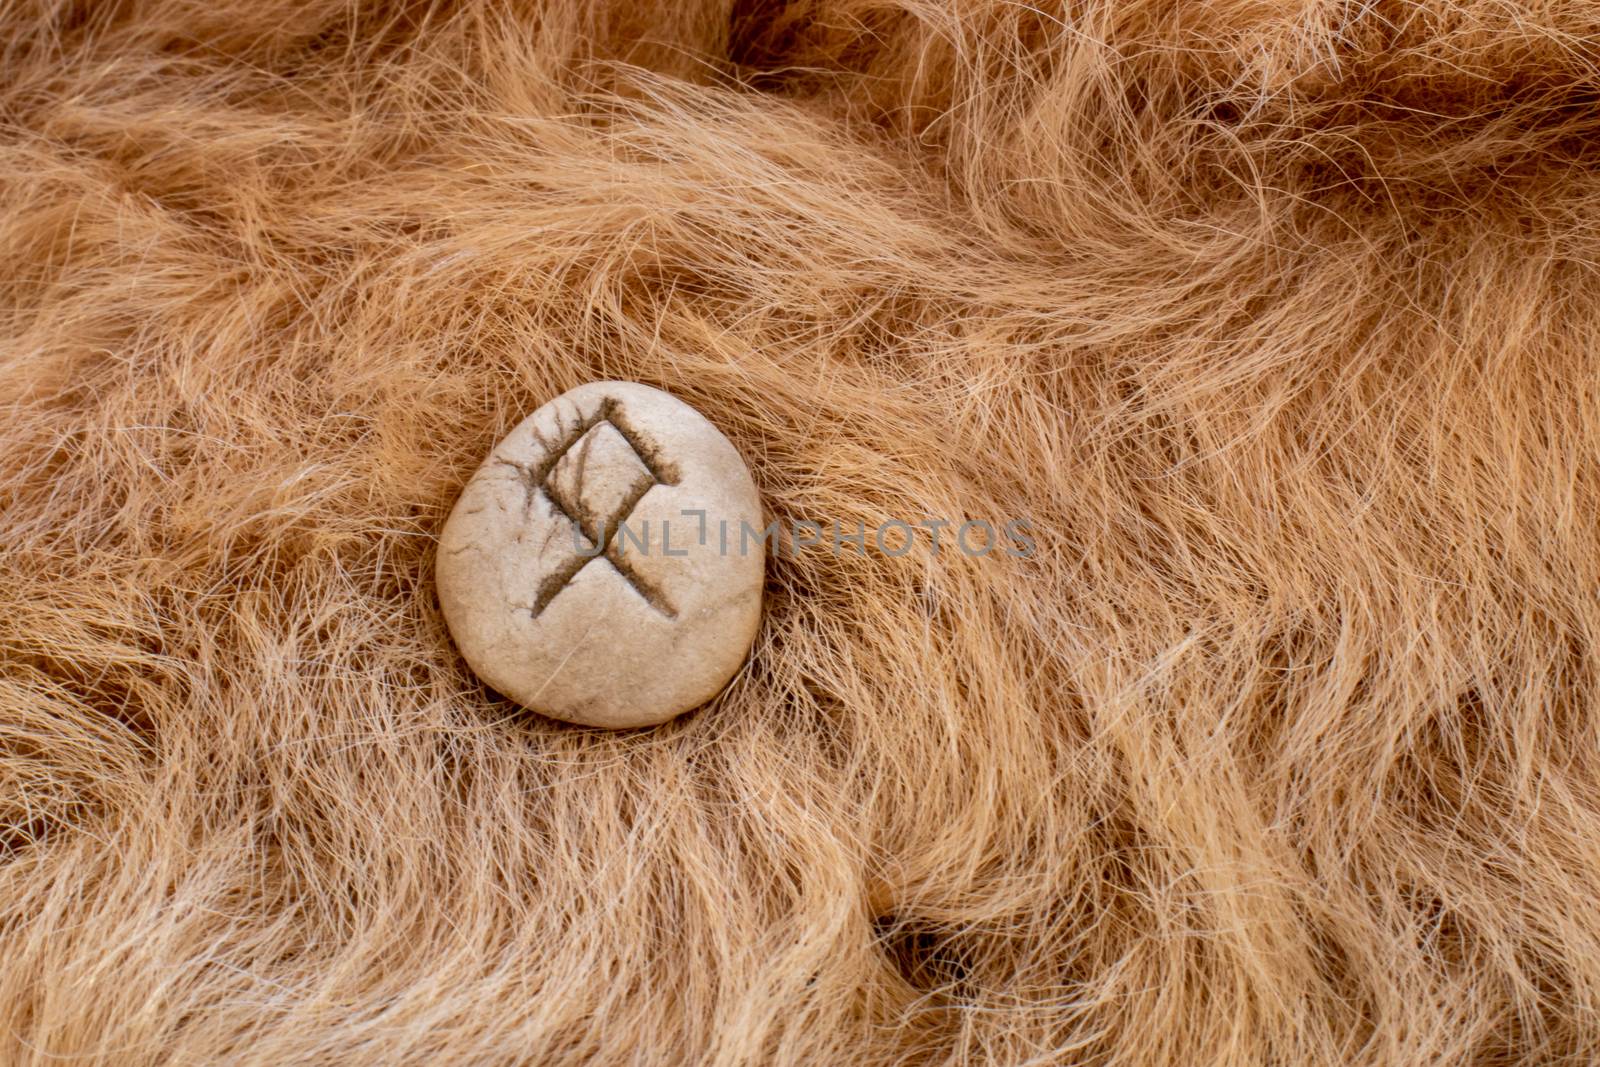 Othila or Othial Nordic stone rune on fur. Letter Ethel of the Viking alphabet.